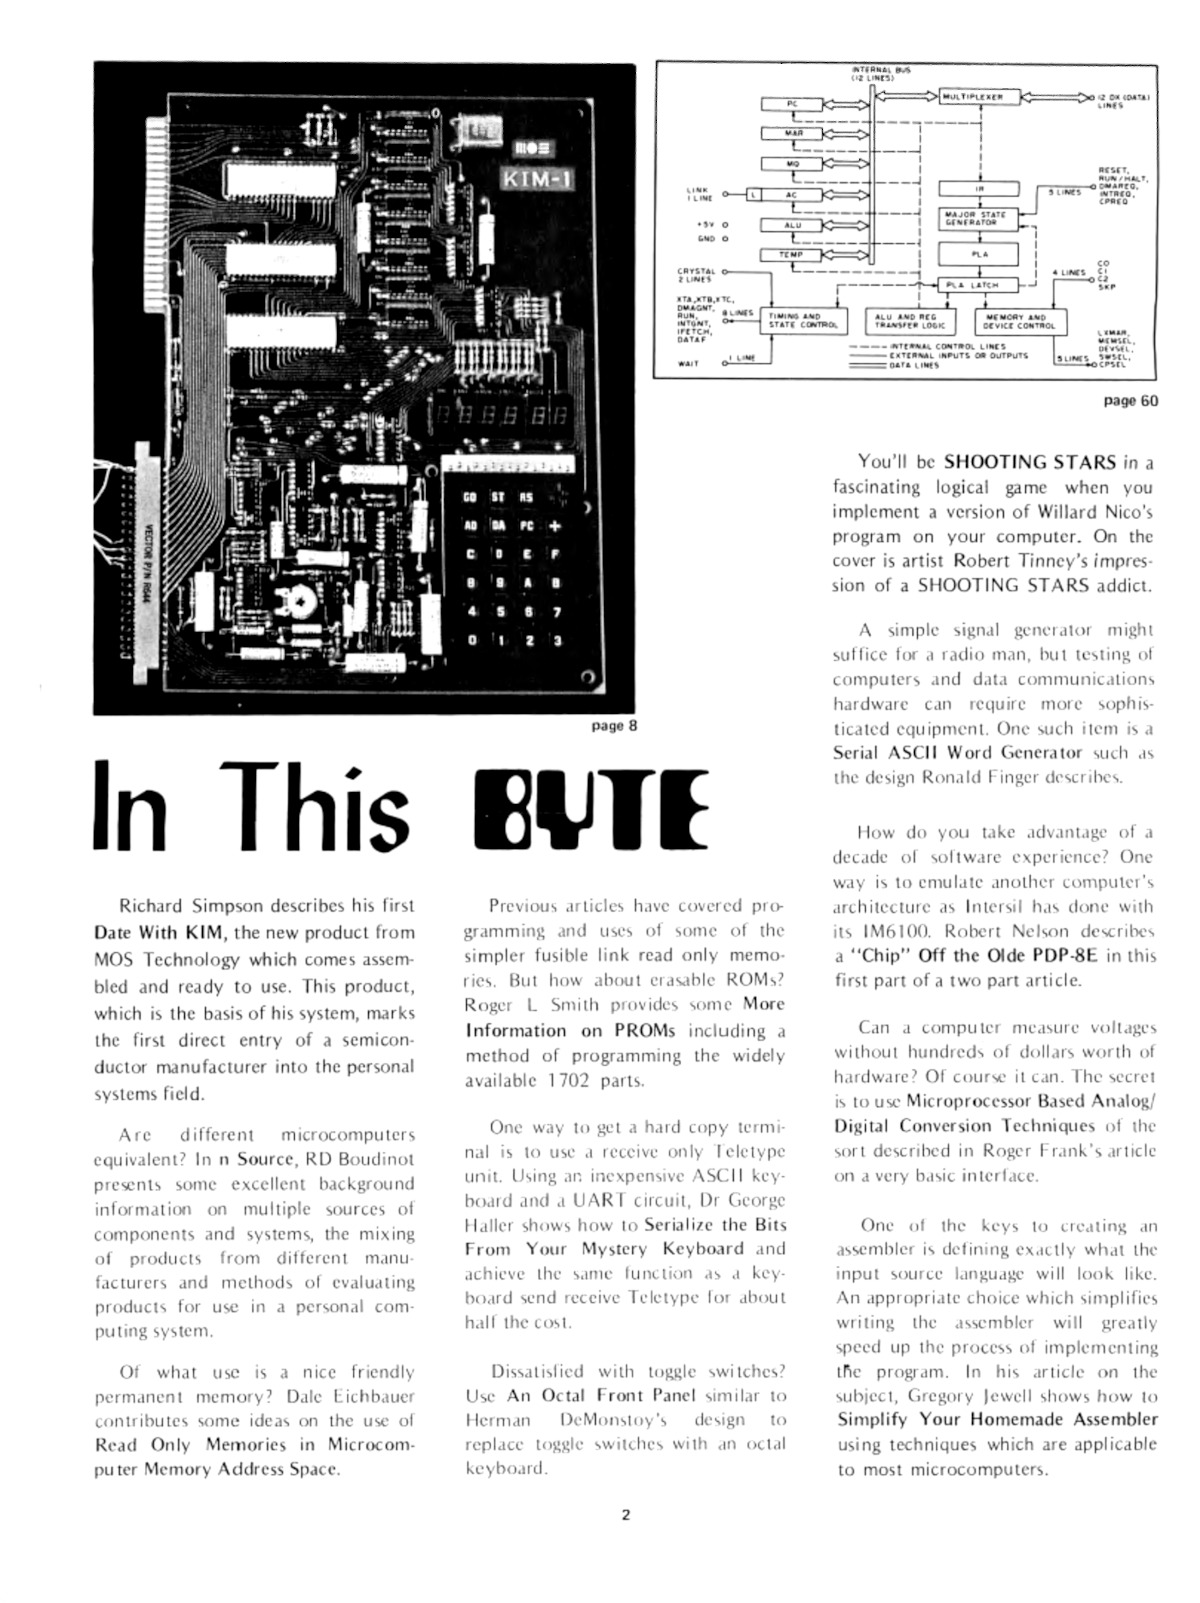 byte-magazine 4